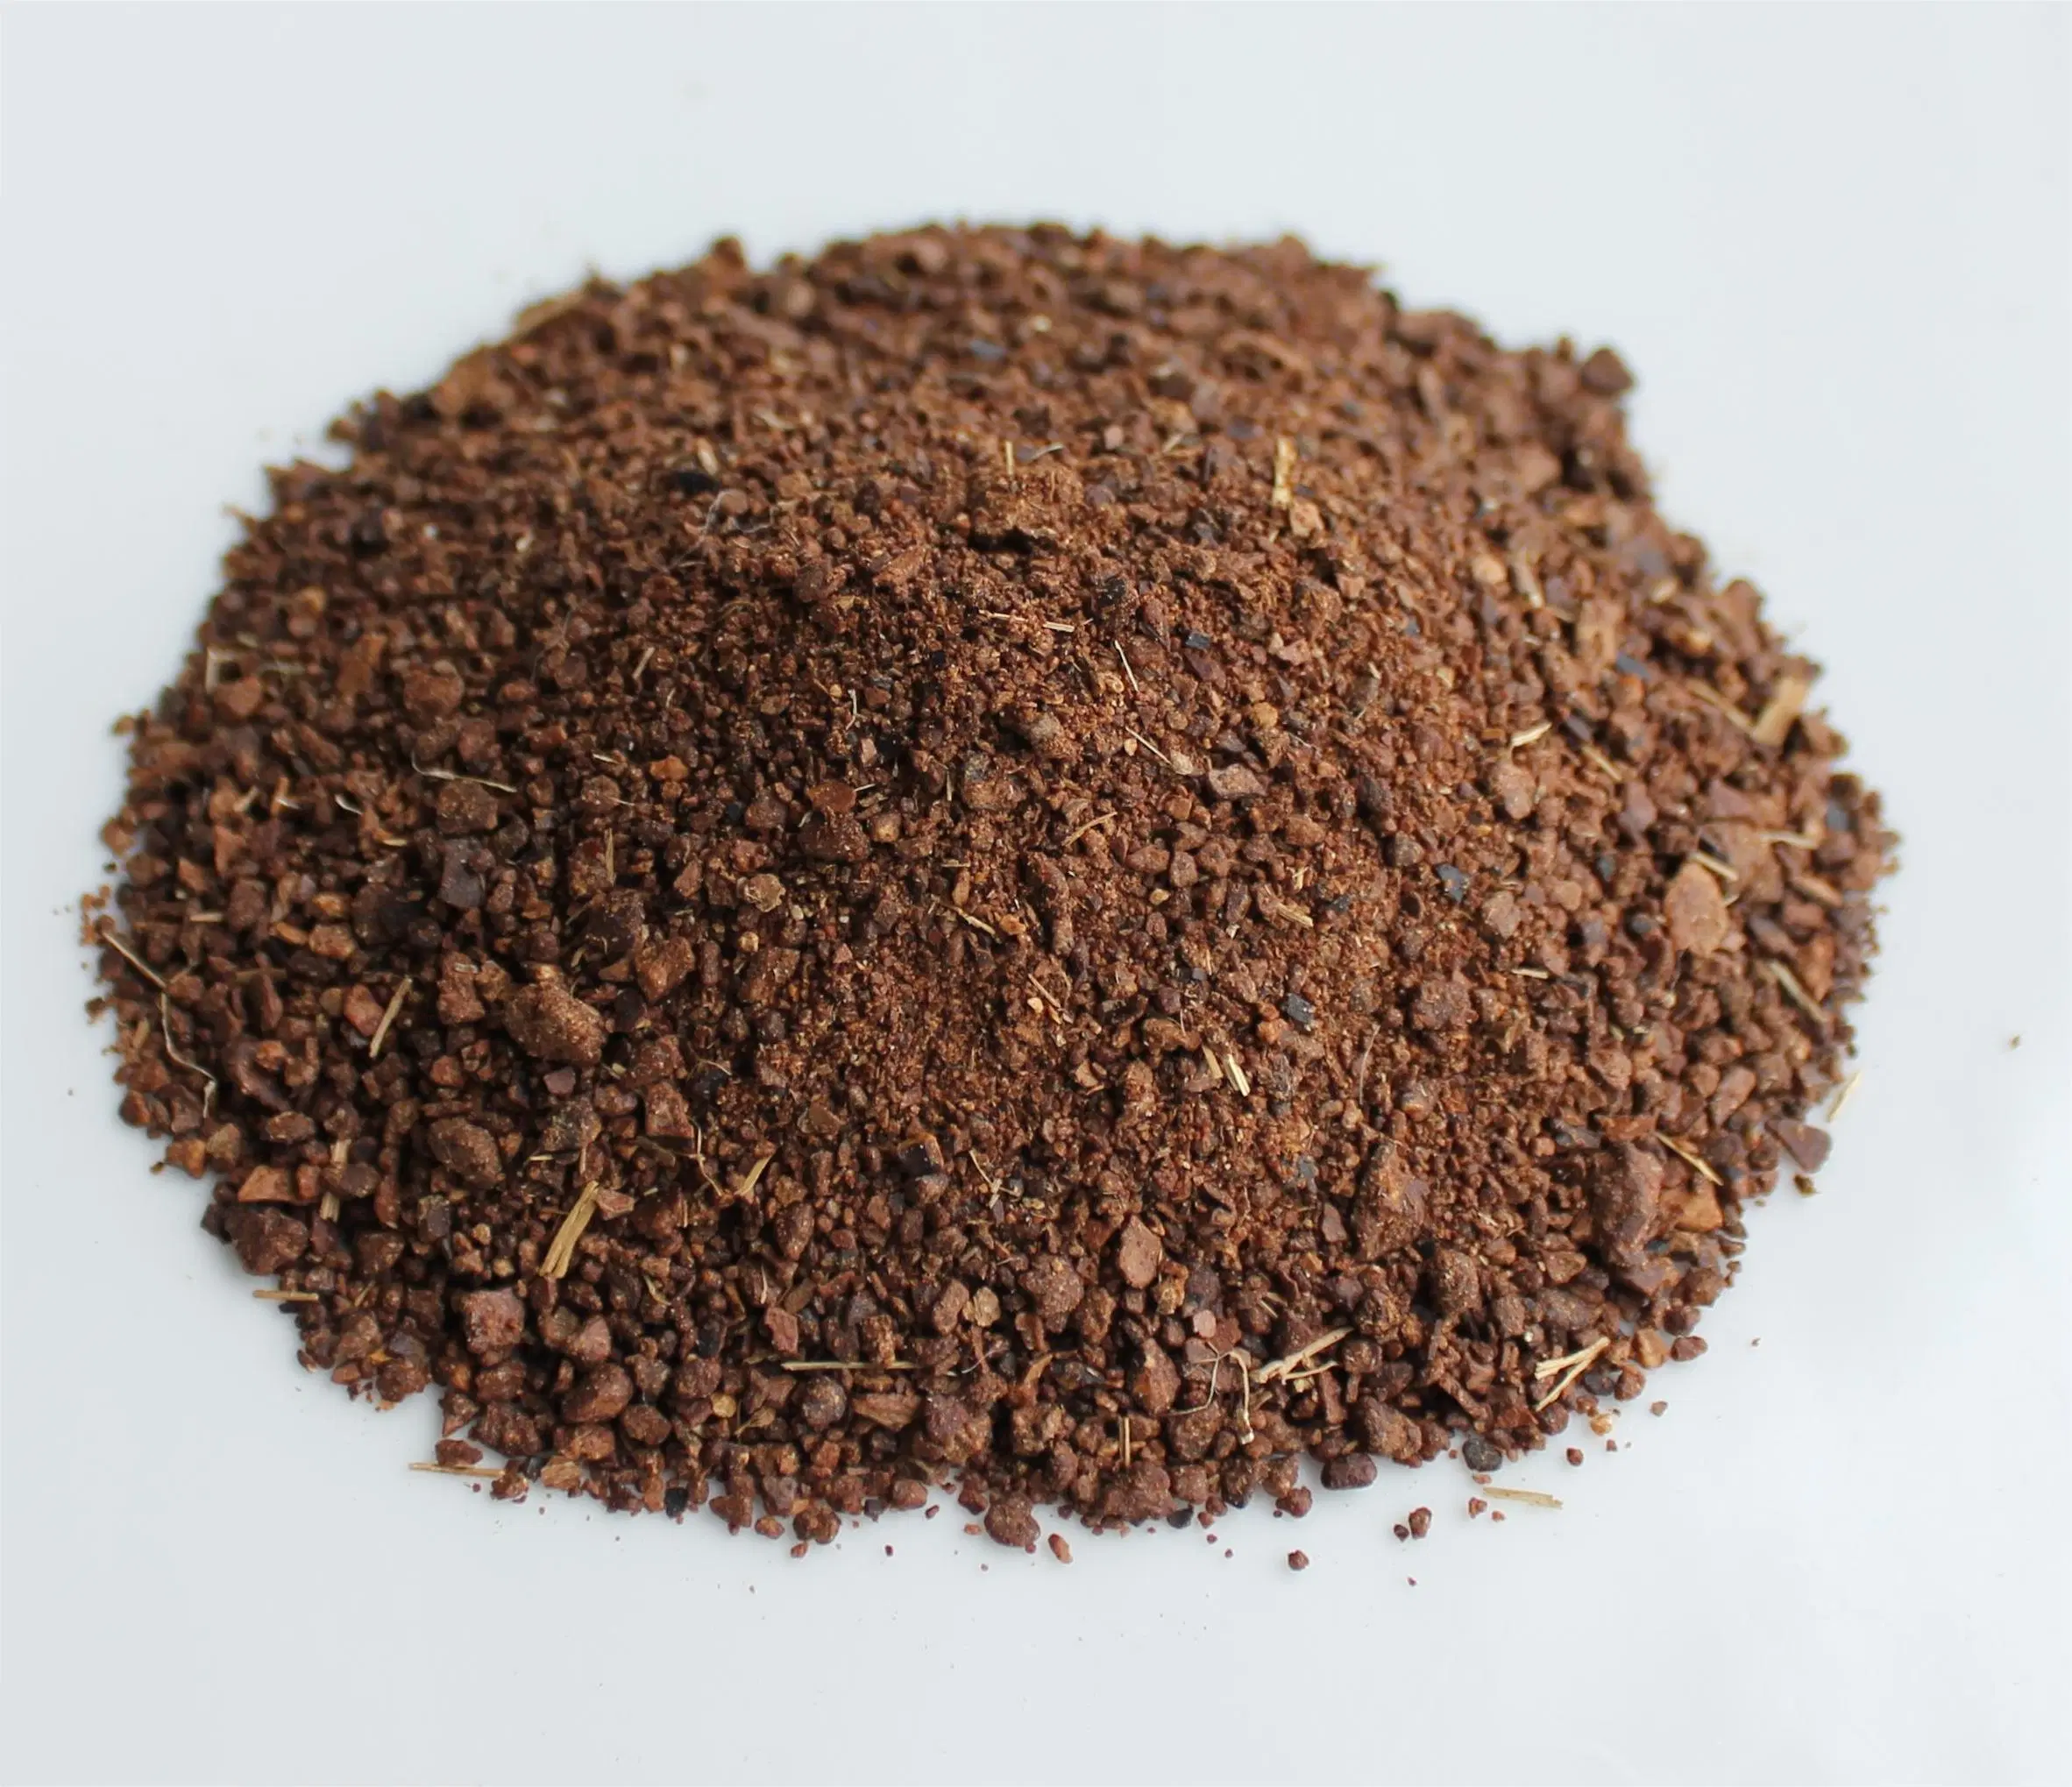 Best Selling Organic Fertilizer Tea Seed Meal with Straw, 100% Natural Fertilizer Tea Seed Meal with Straw